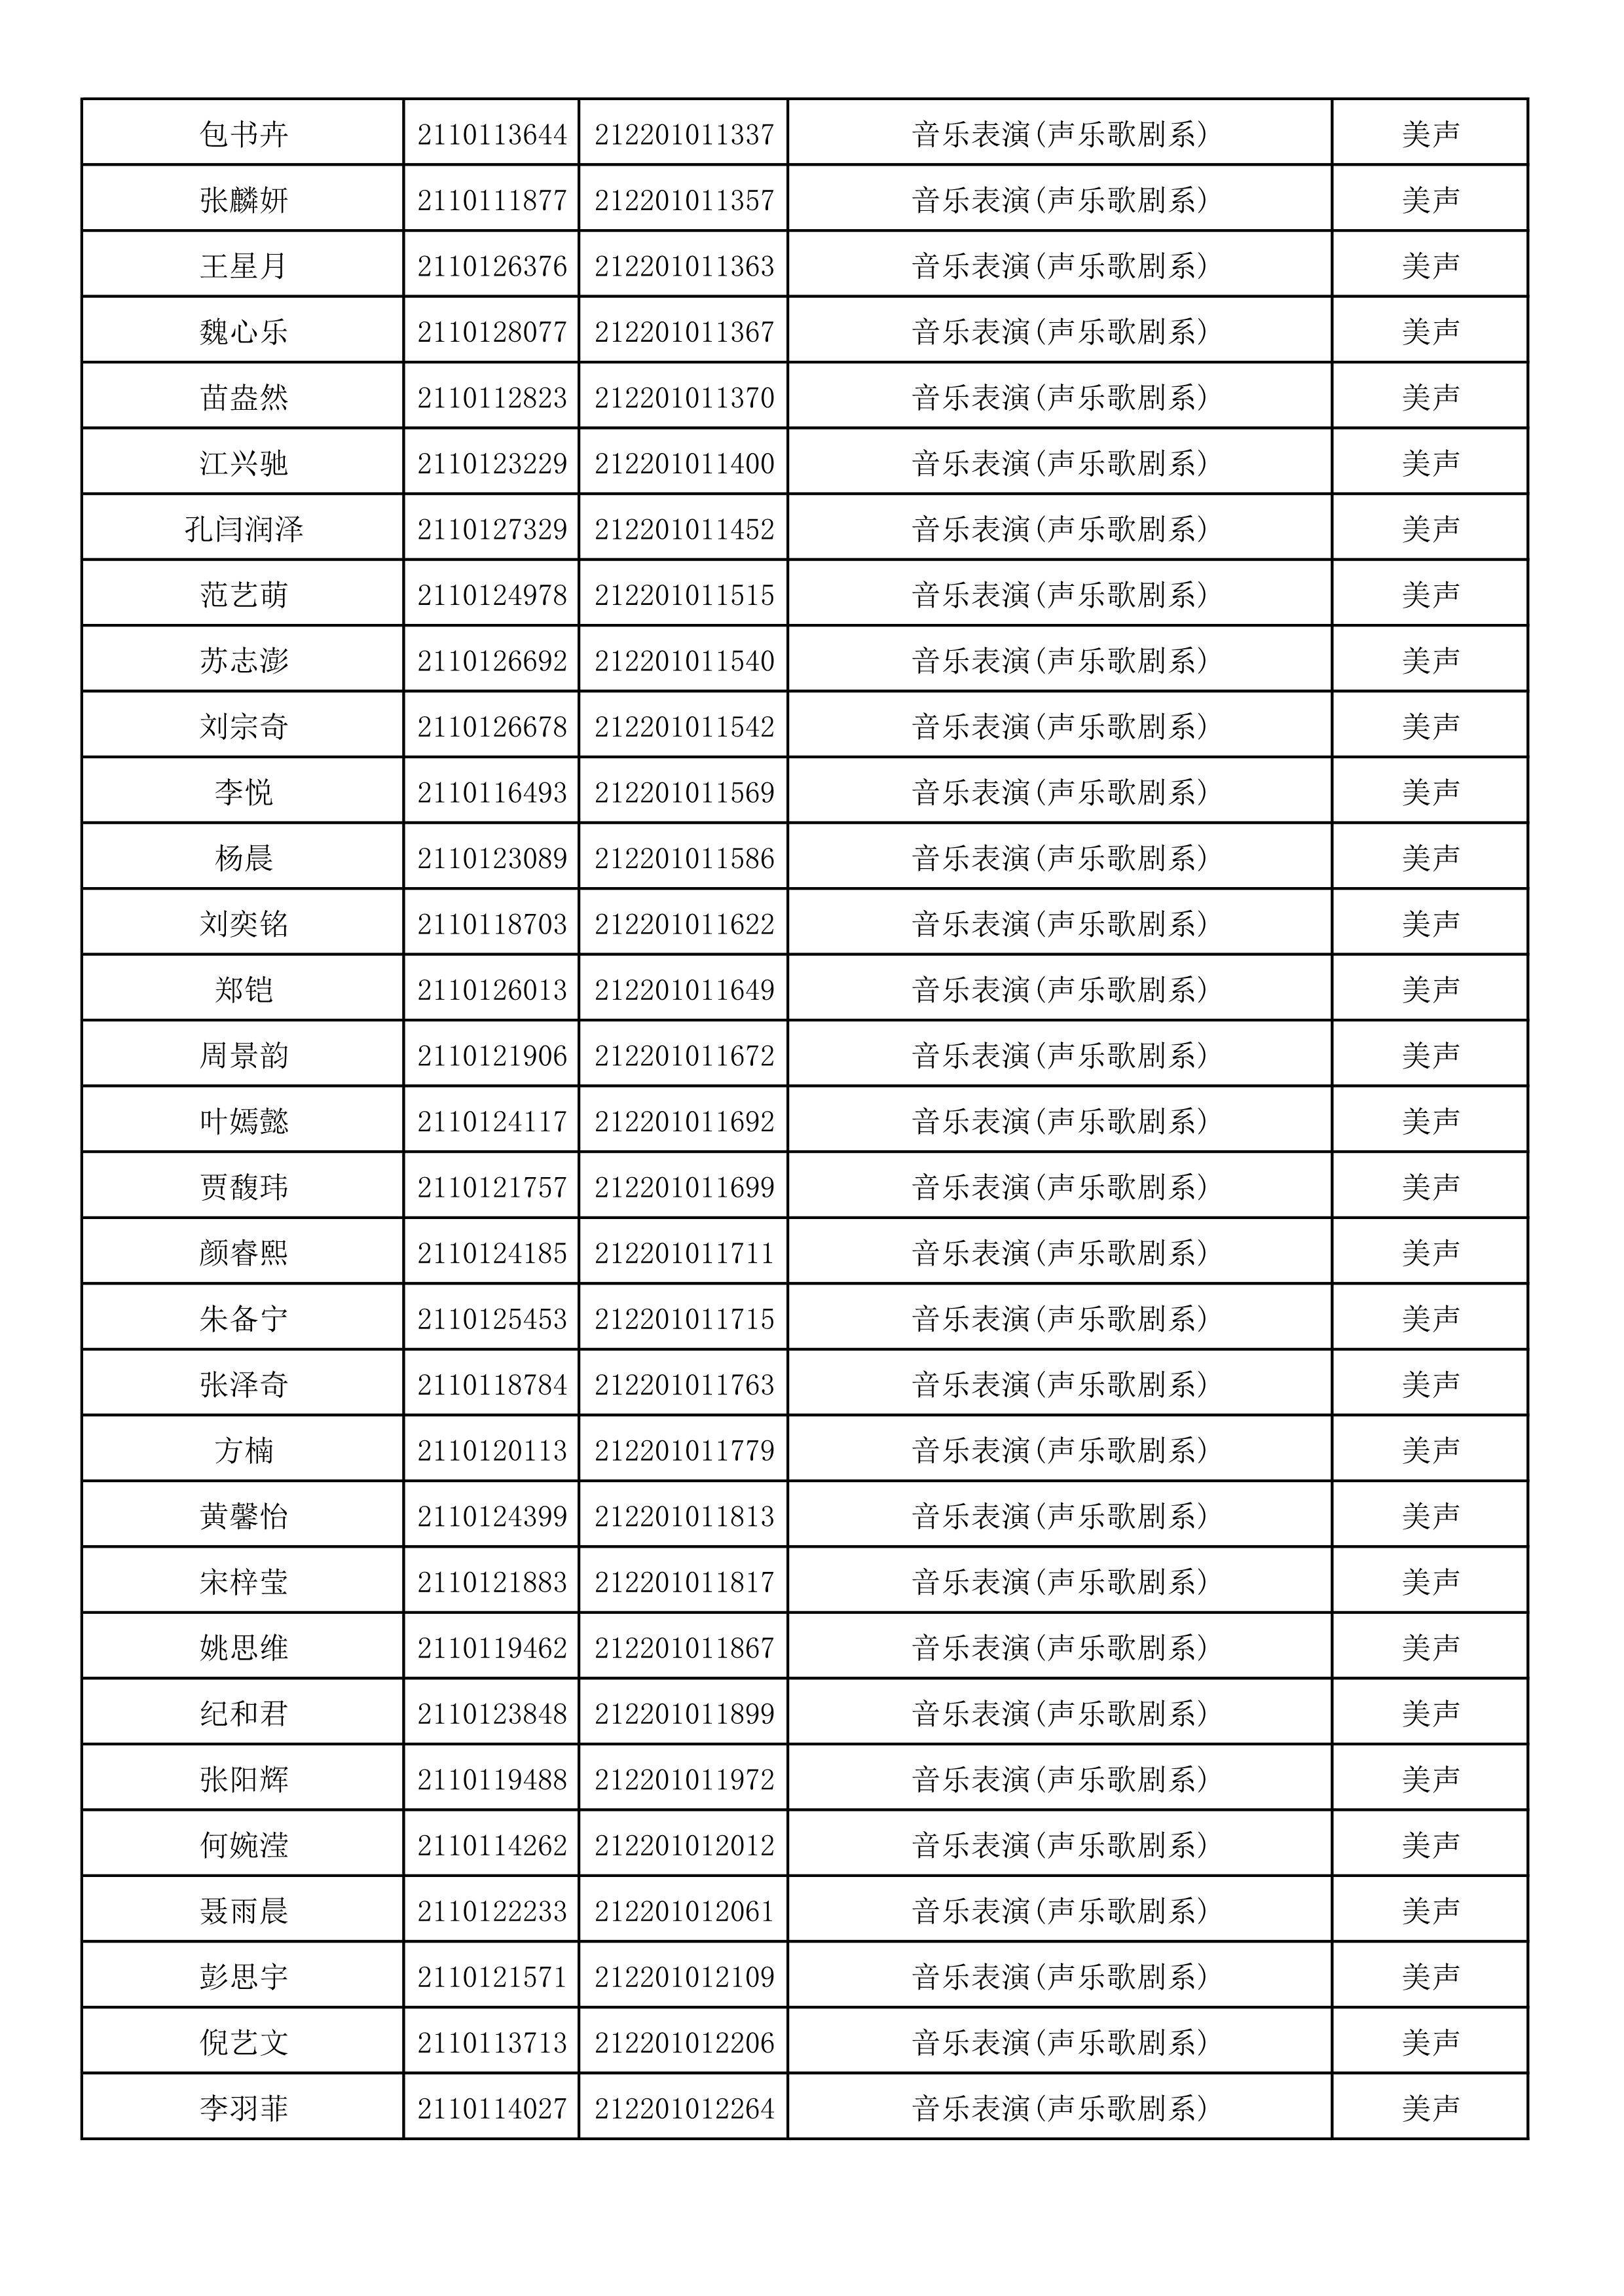 附件2：浙江音乐学院2021年本科招生专业校考初试合格考生名单_30.png